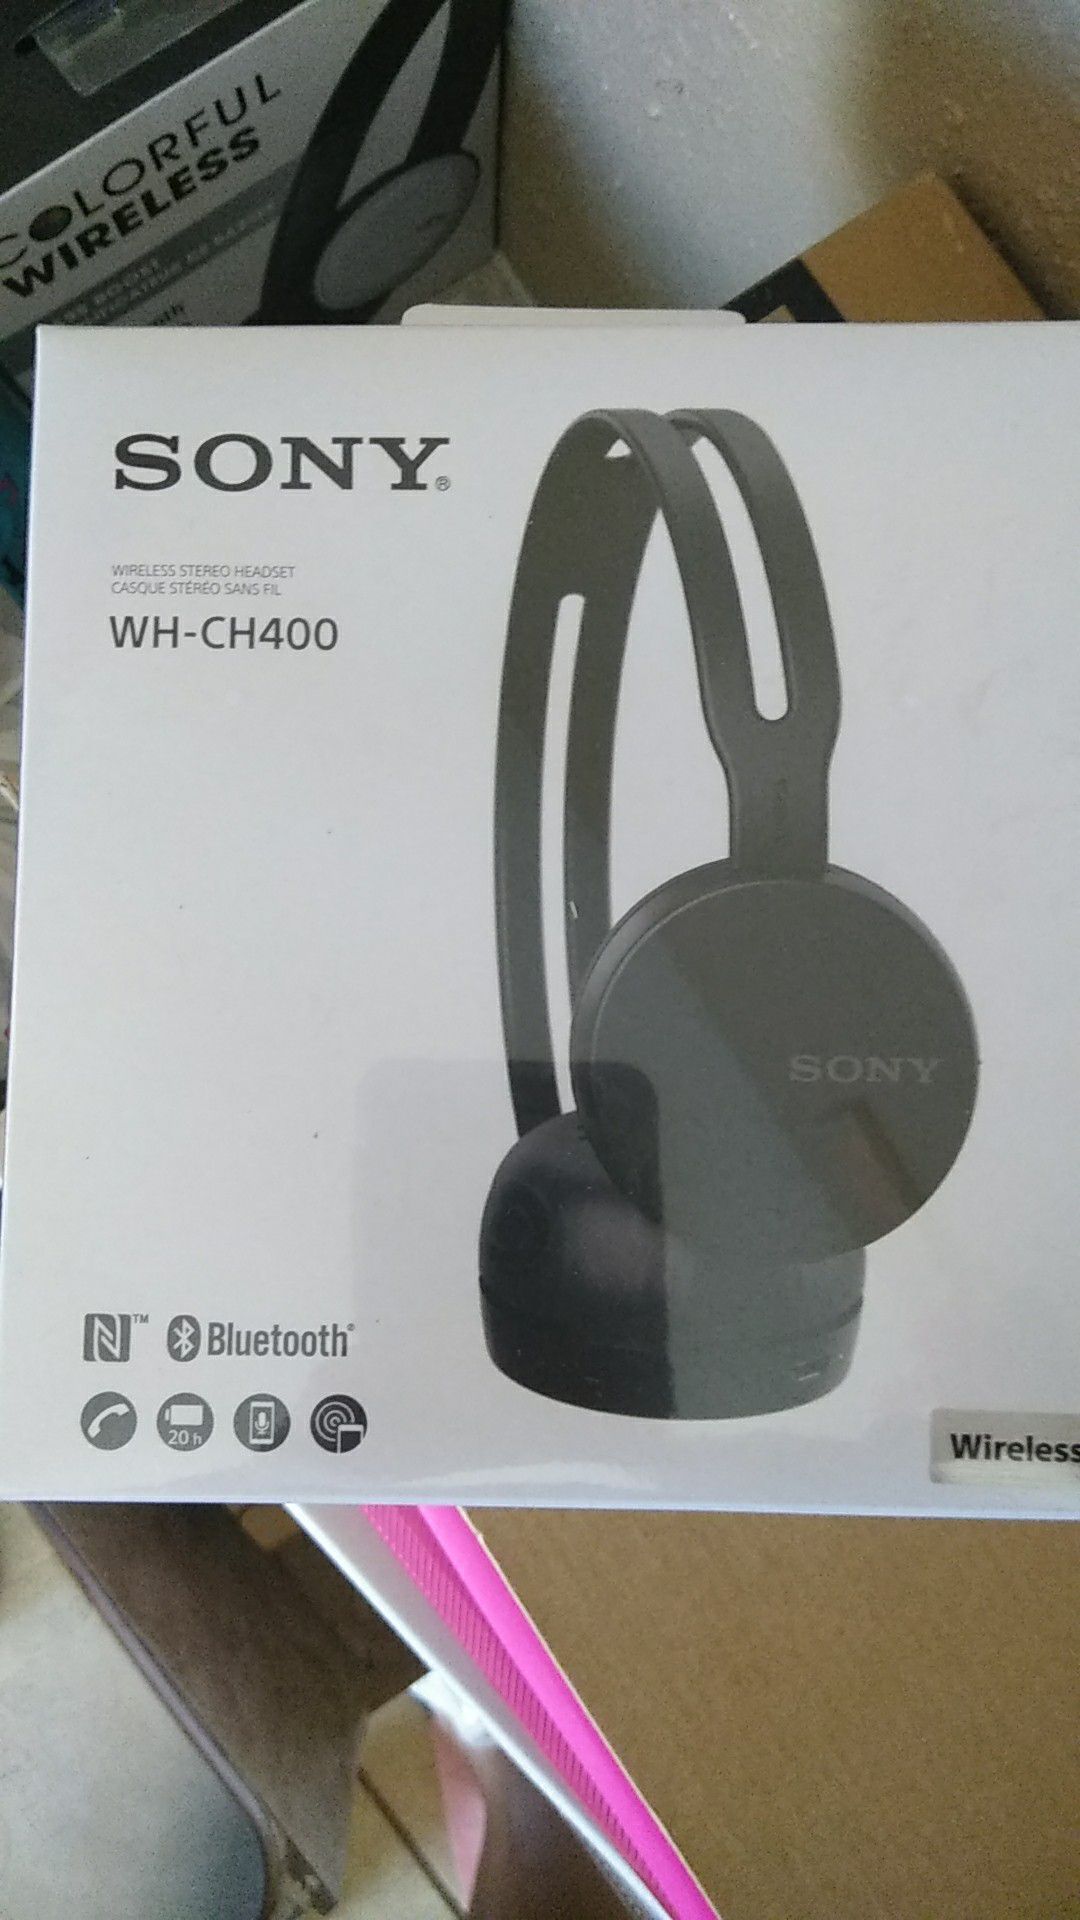 Sony wireless headphones